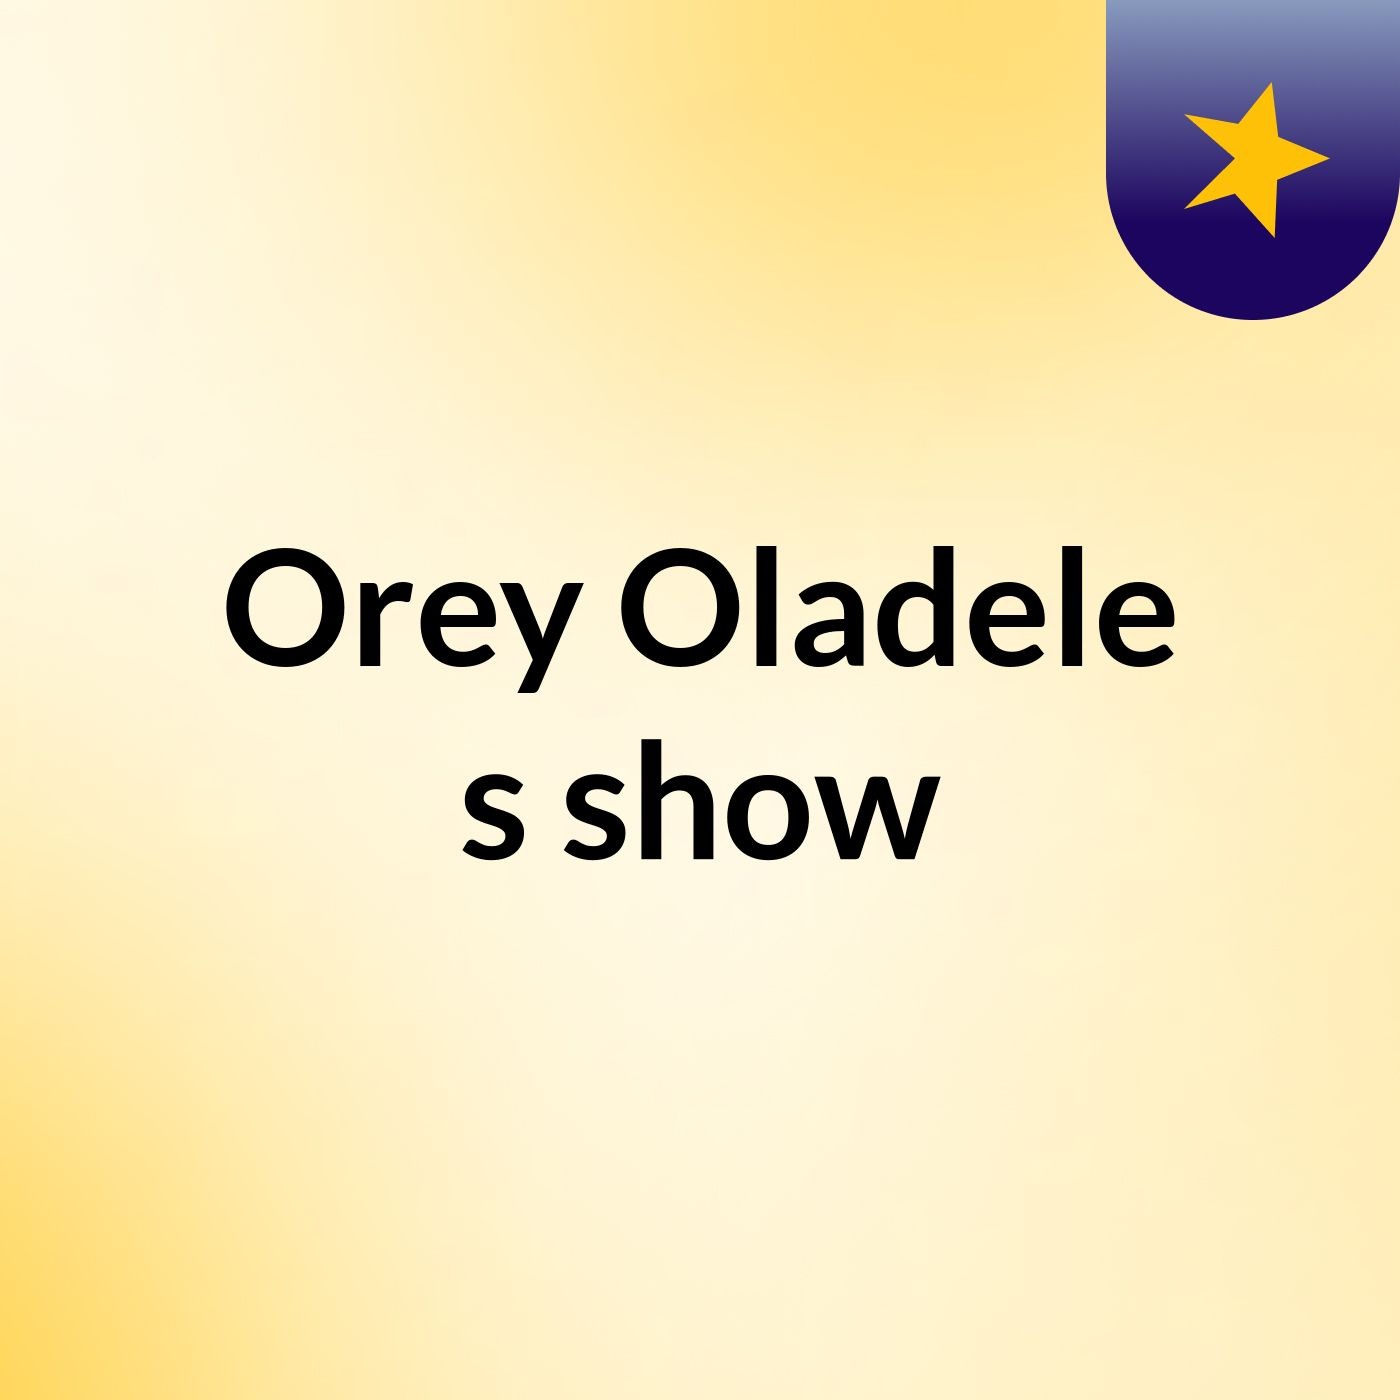 Episode 3 - Orey Oladele's show